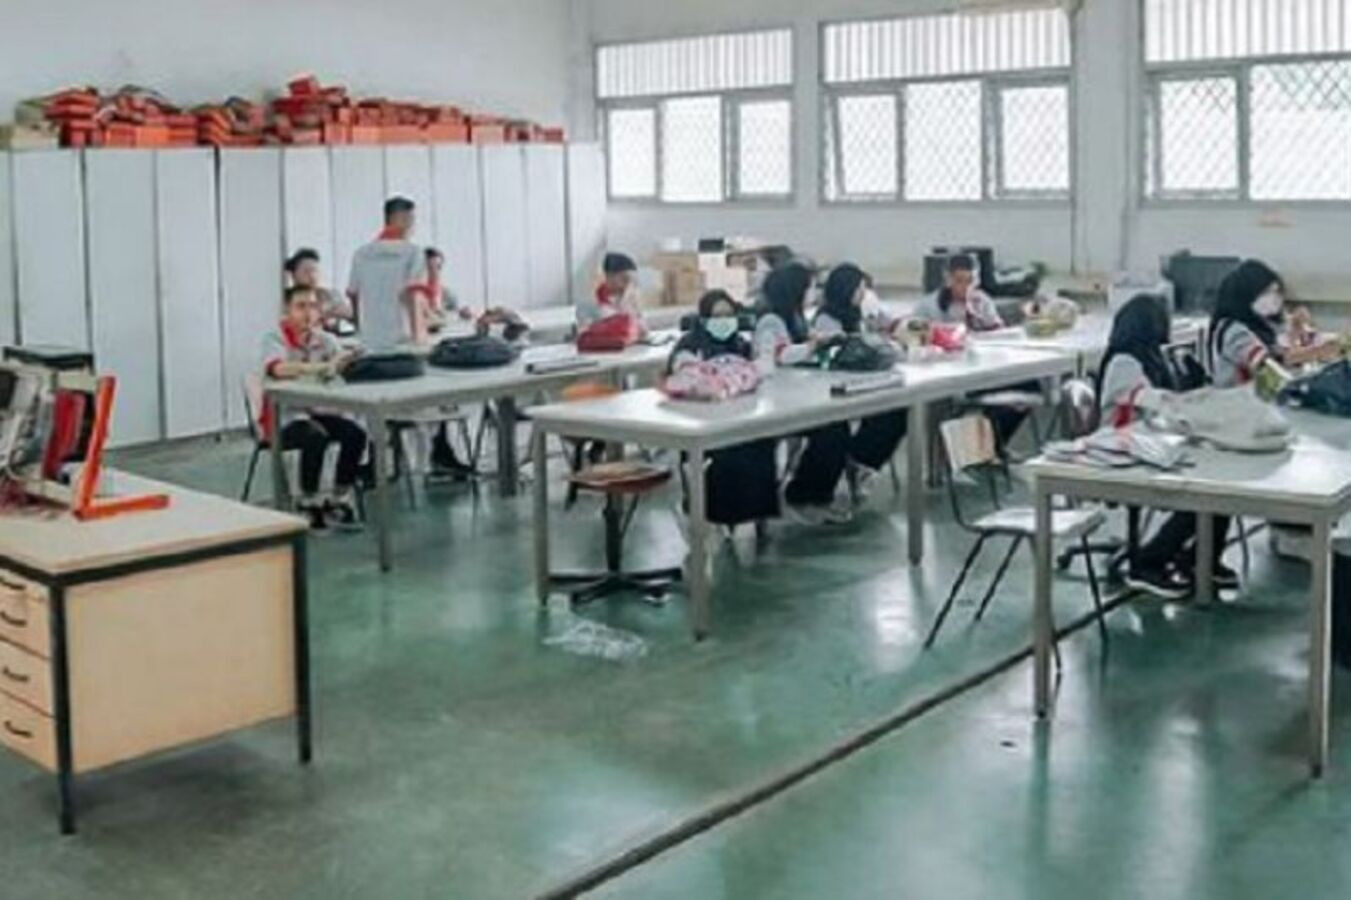 Program Pelatihan Kerja Ala Disnaker Sukses Turunkan Angka Pengangguran di Depok - JPNN.com Jabar